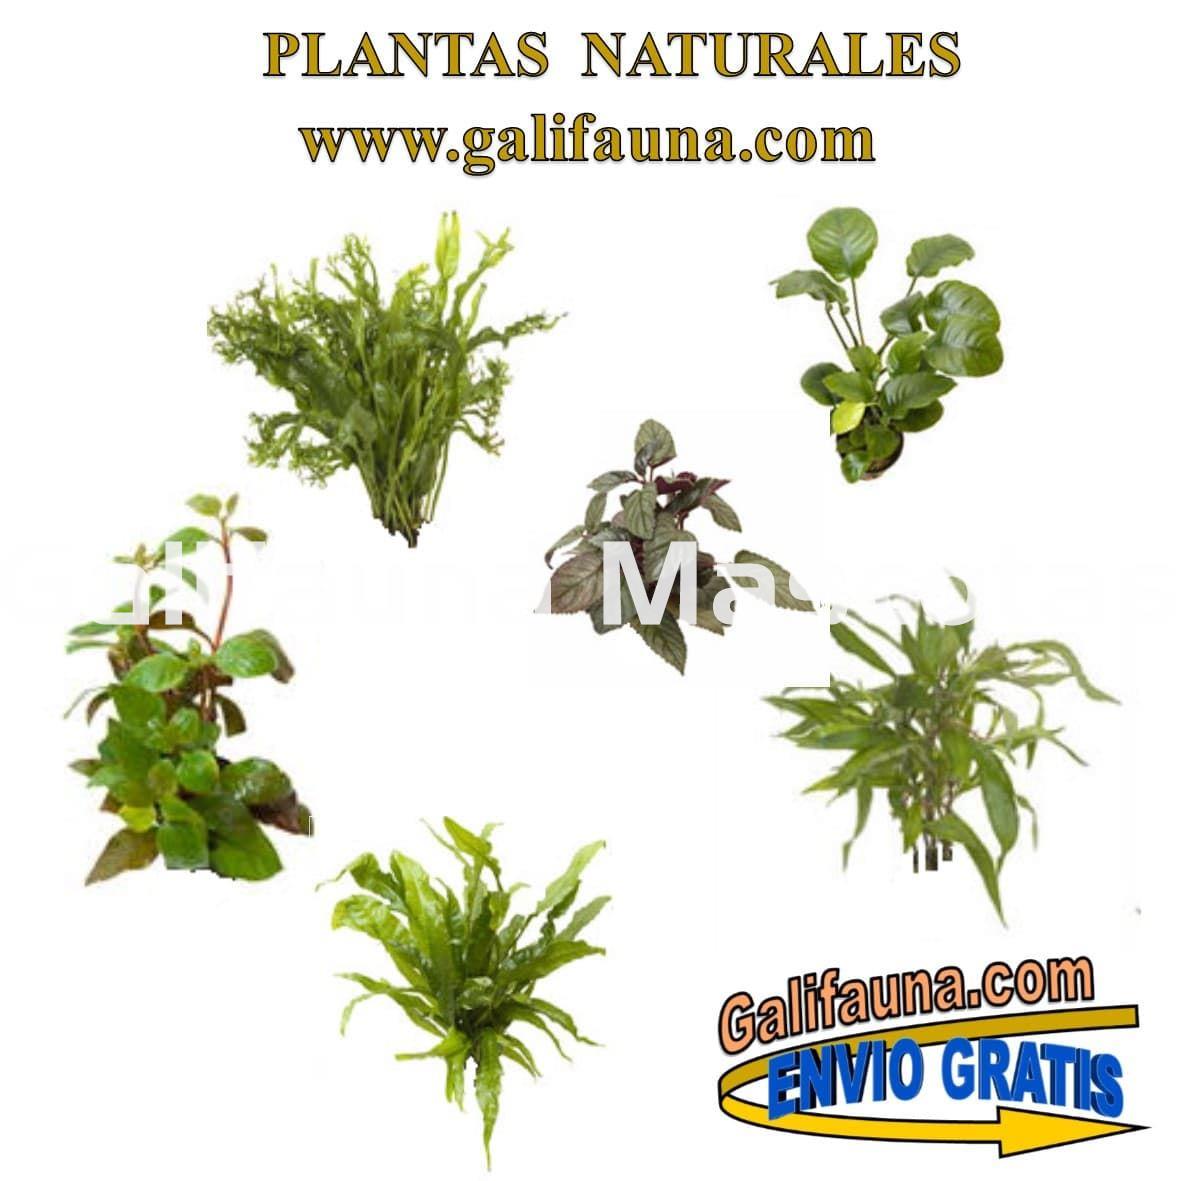 Pack de 3 plantas naturales surtidas con Portes Gratis - Imagen 2